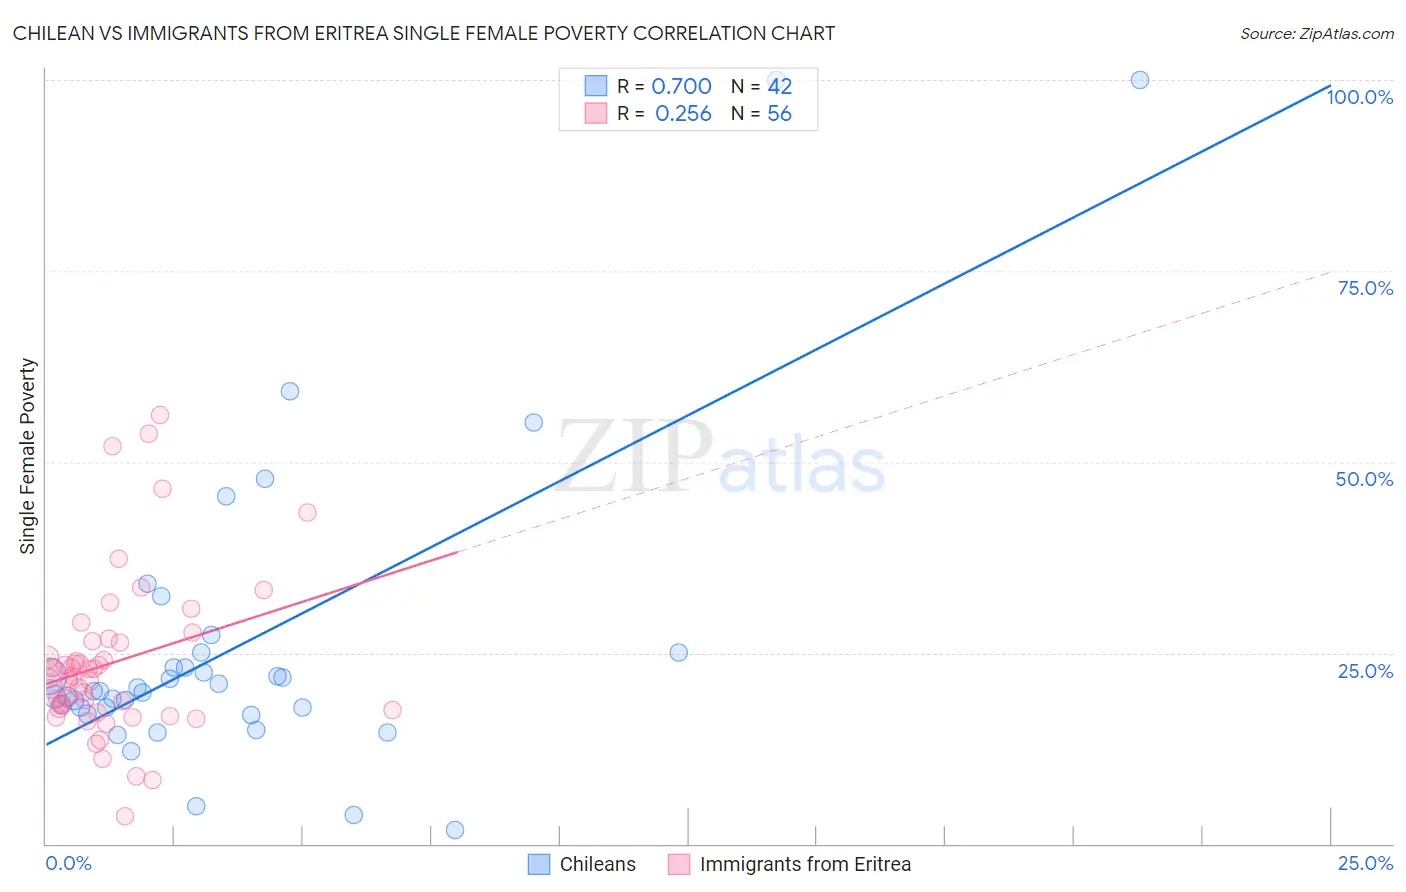 Chilean vs Immigrants from Eritrea Single Female Poverty